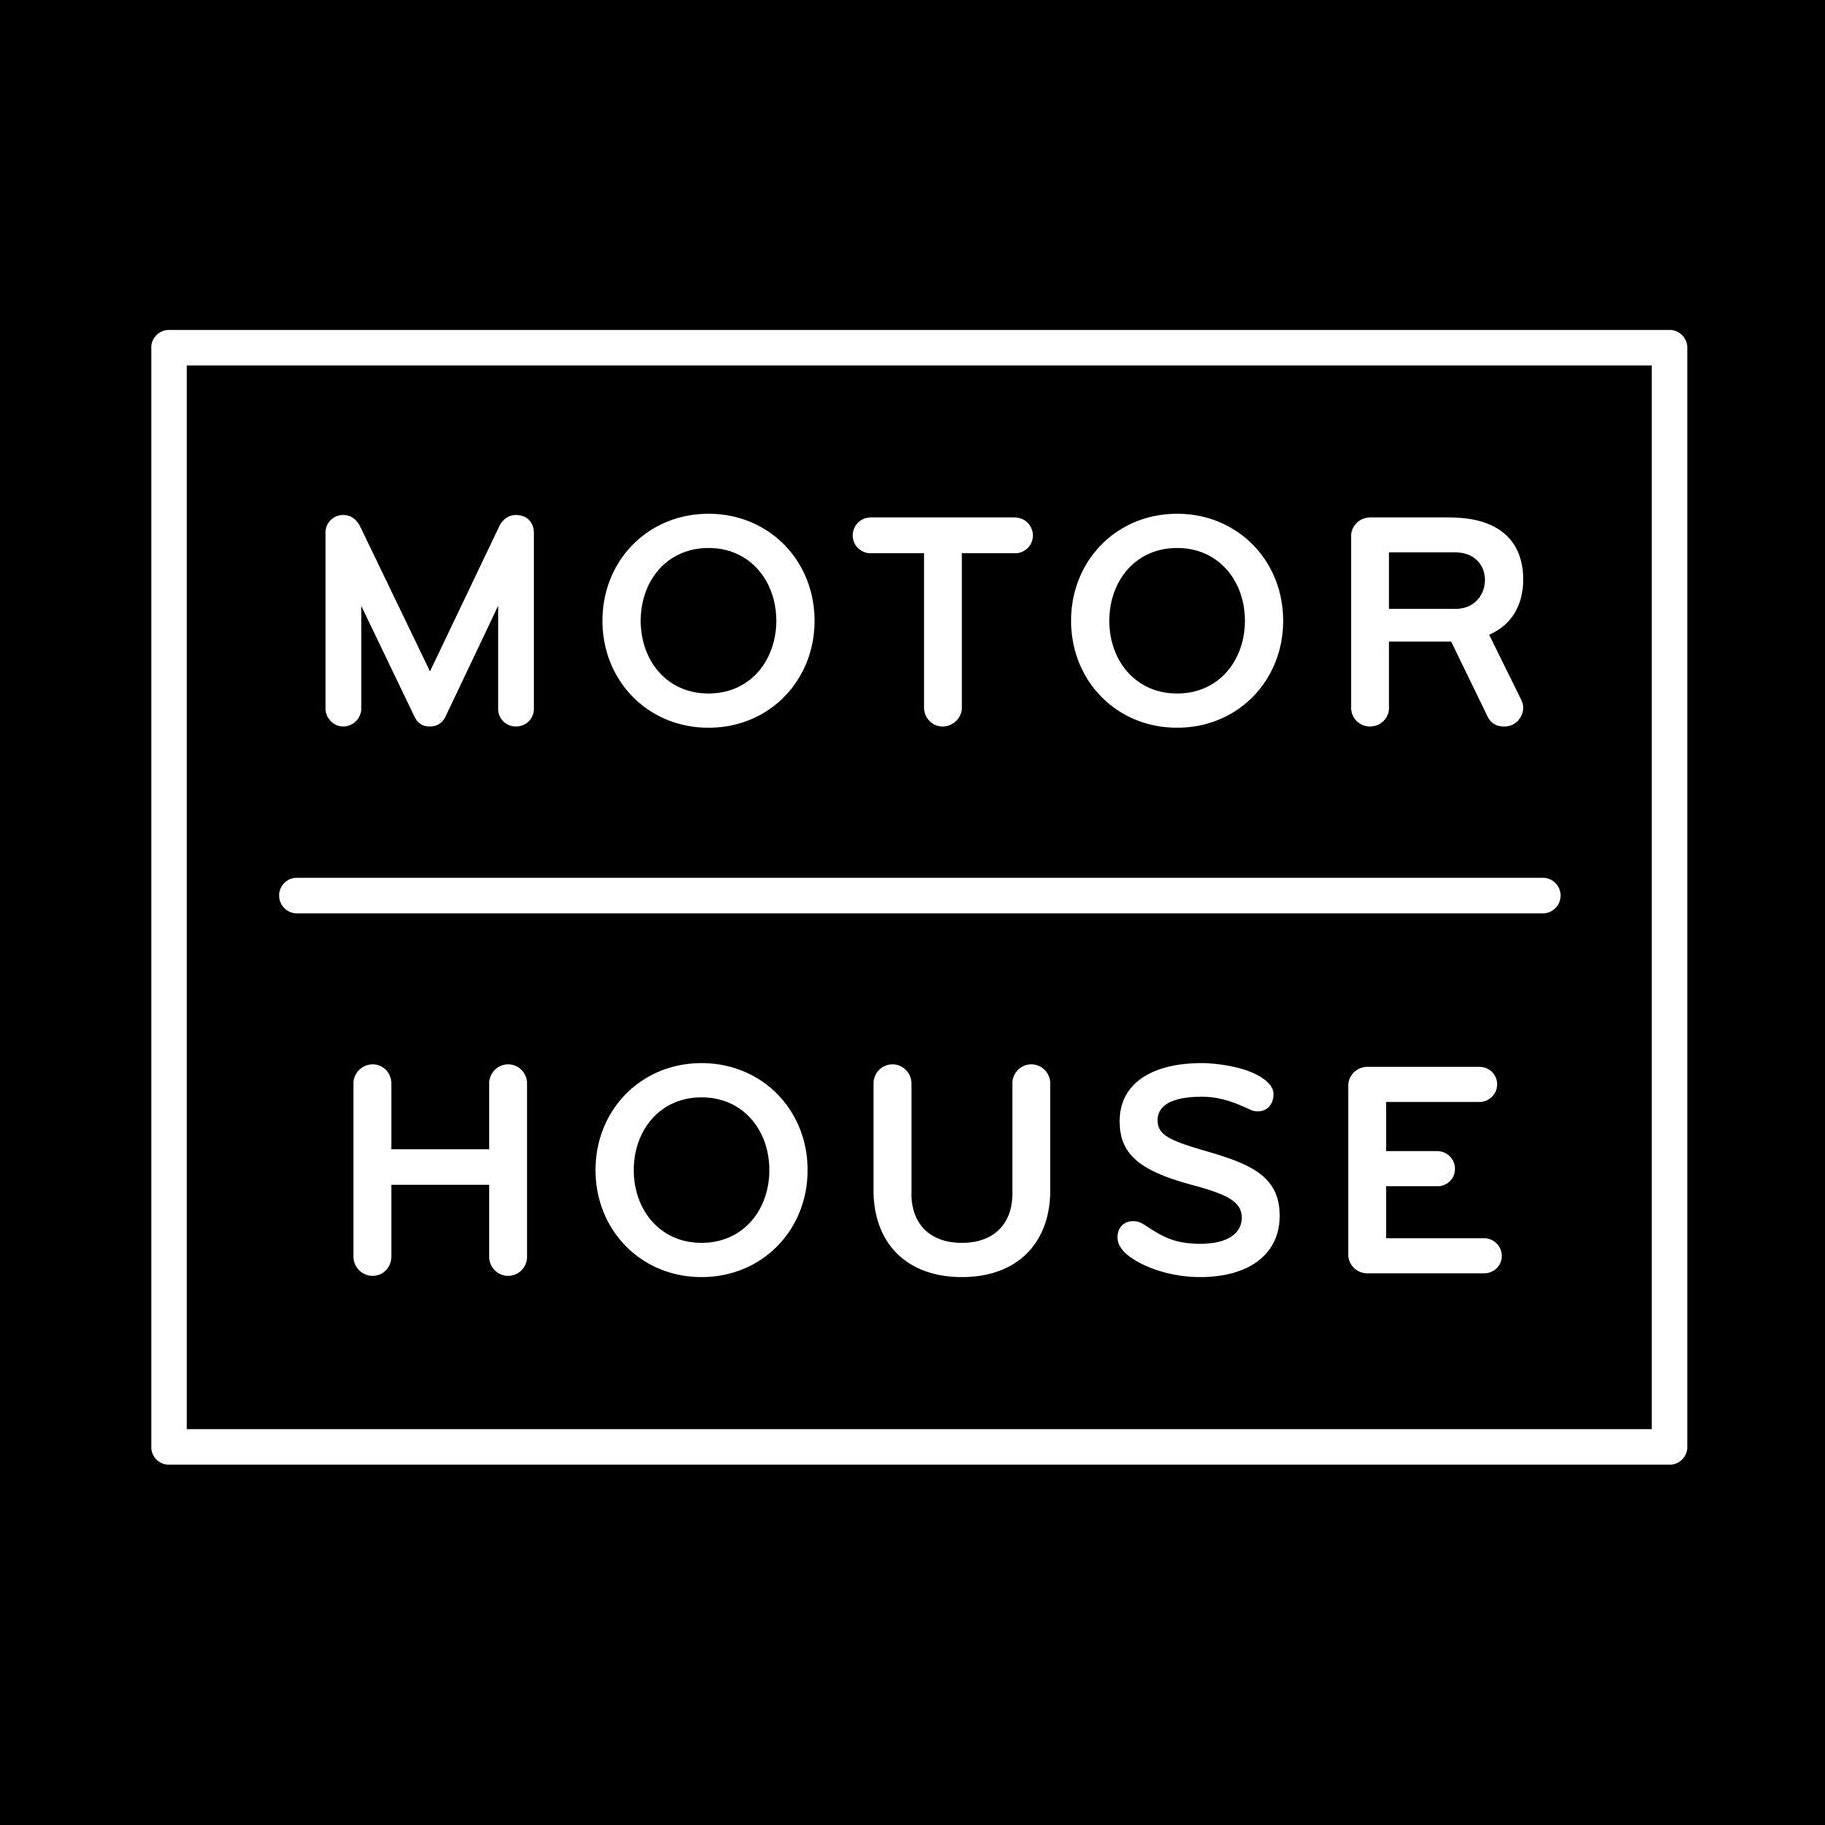 Company logo of Motor House